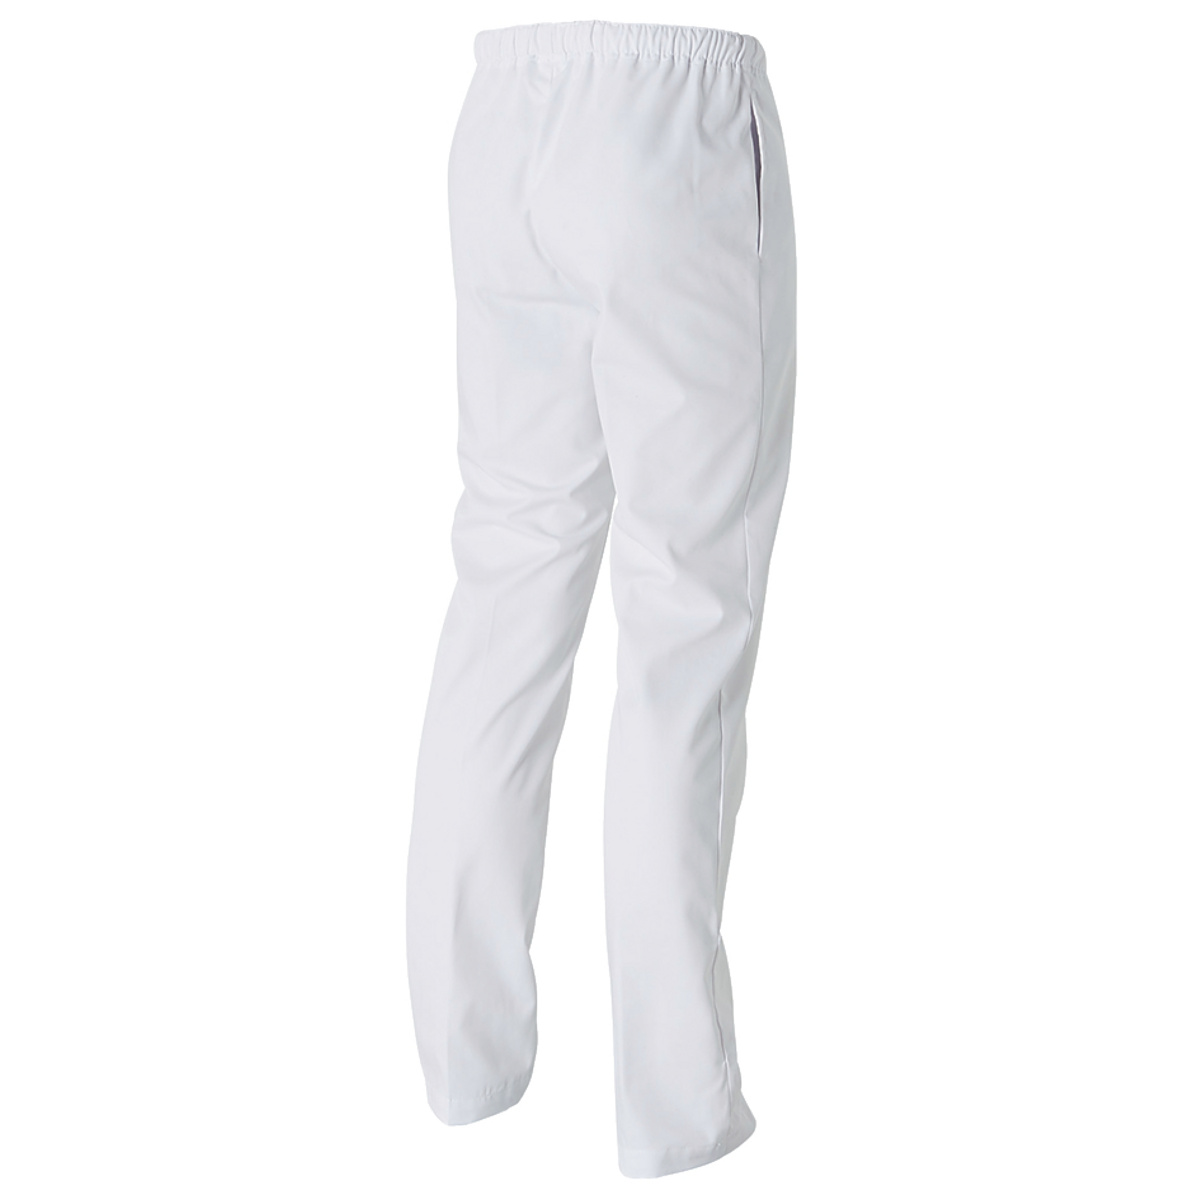 Pantalon de cuisine blanc T3 Promys Molinel - ECOTEL ANNECY